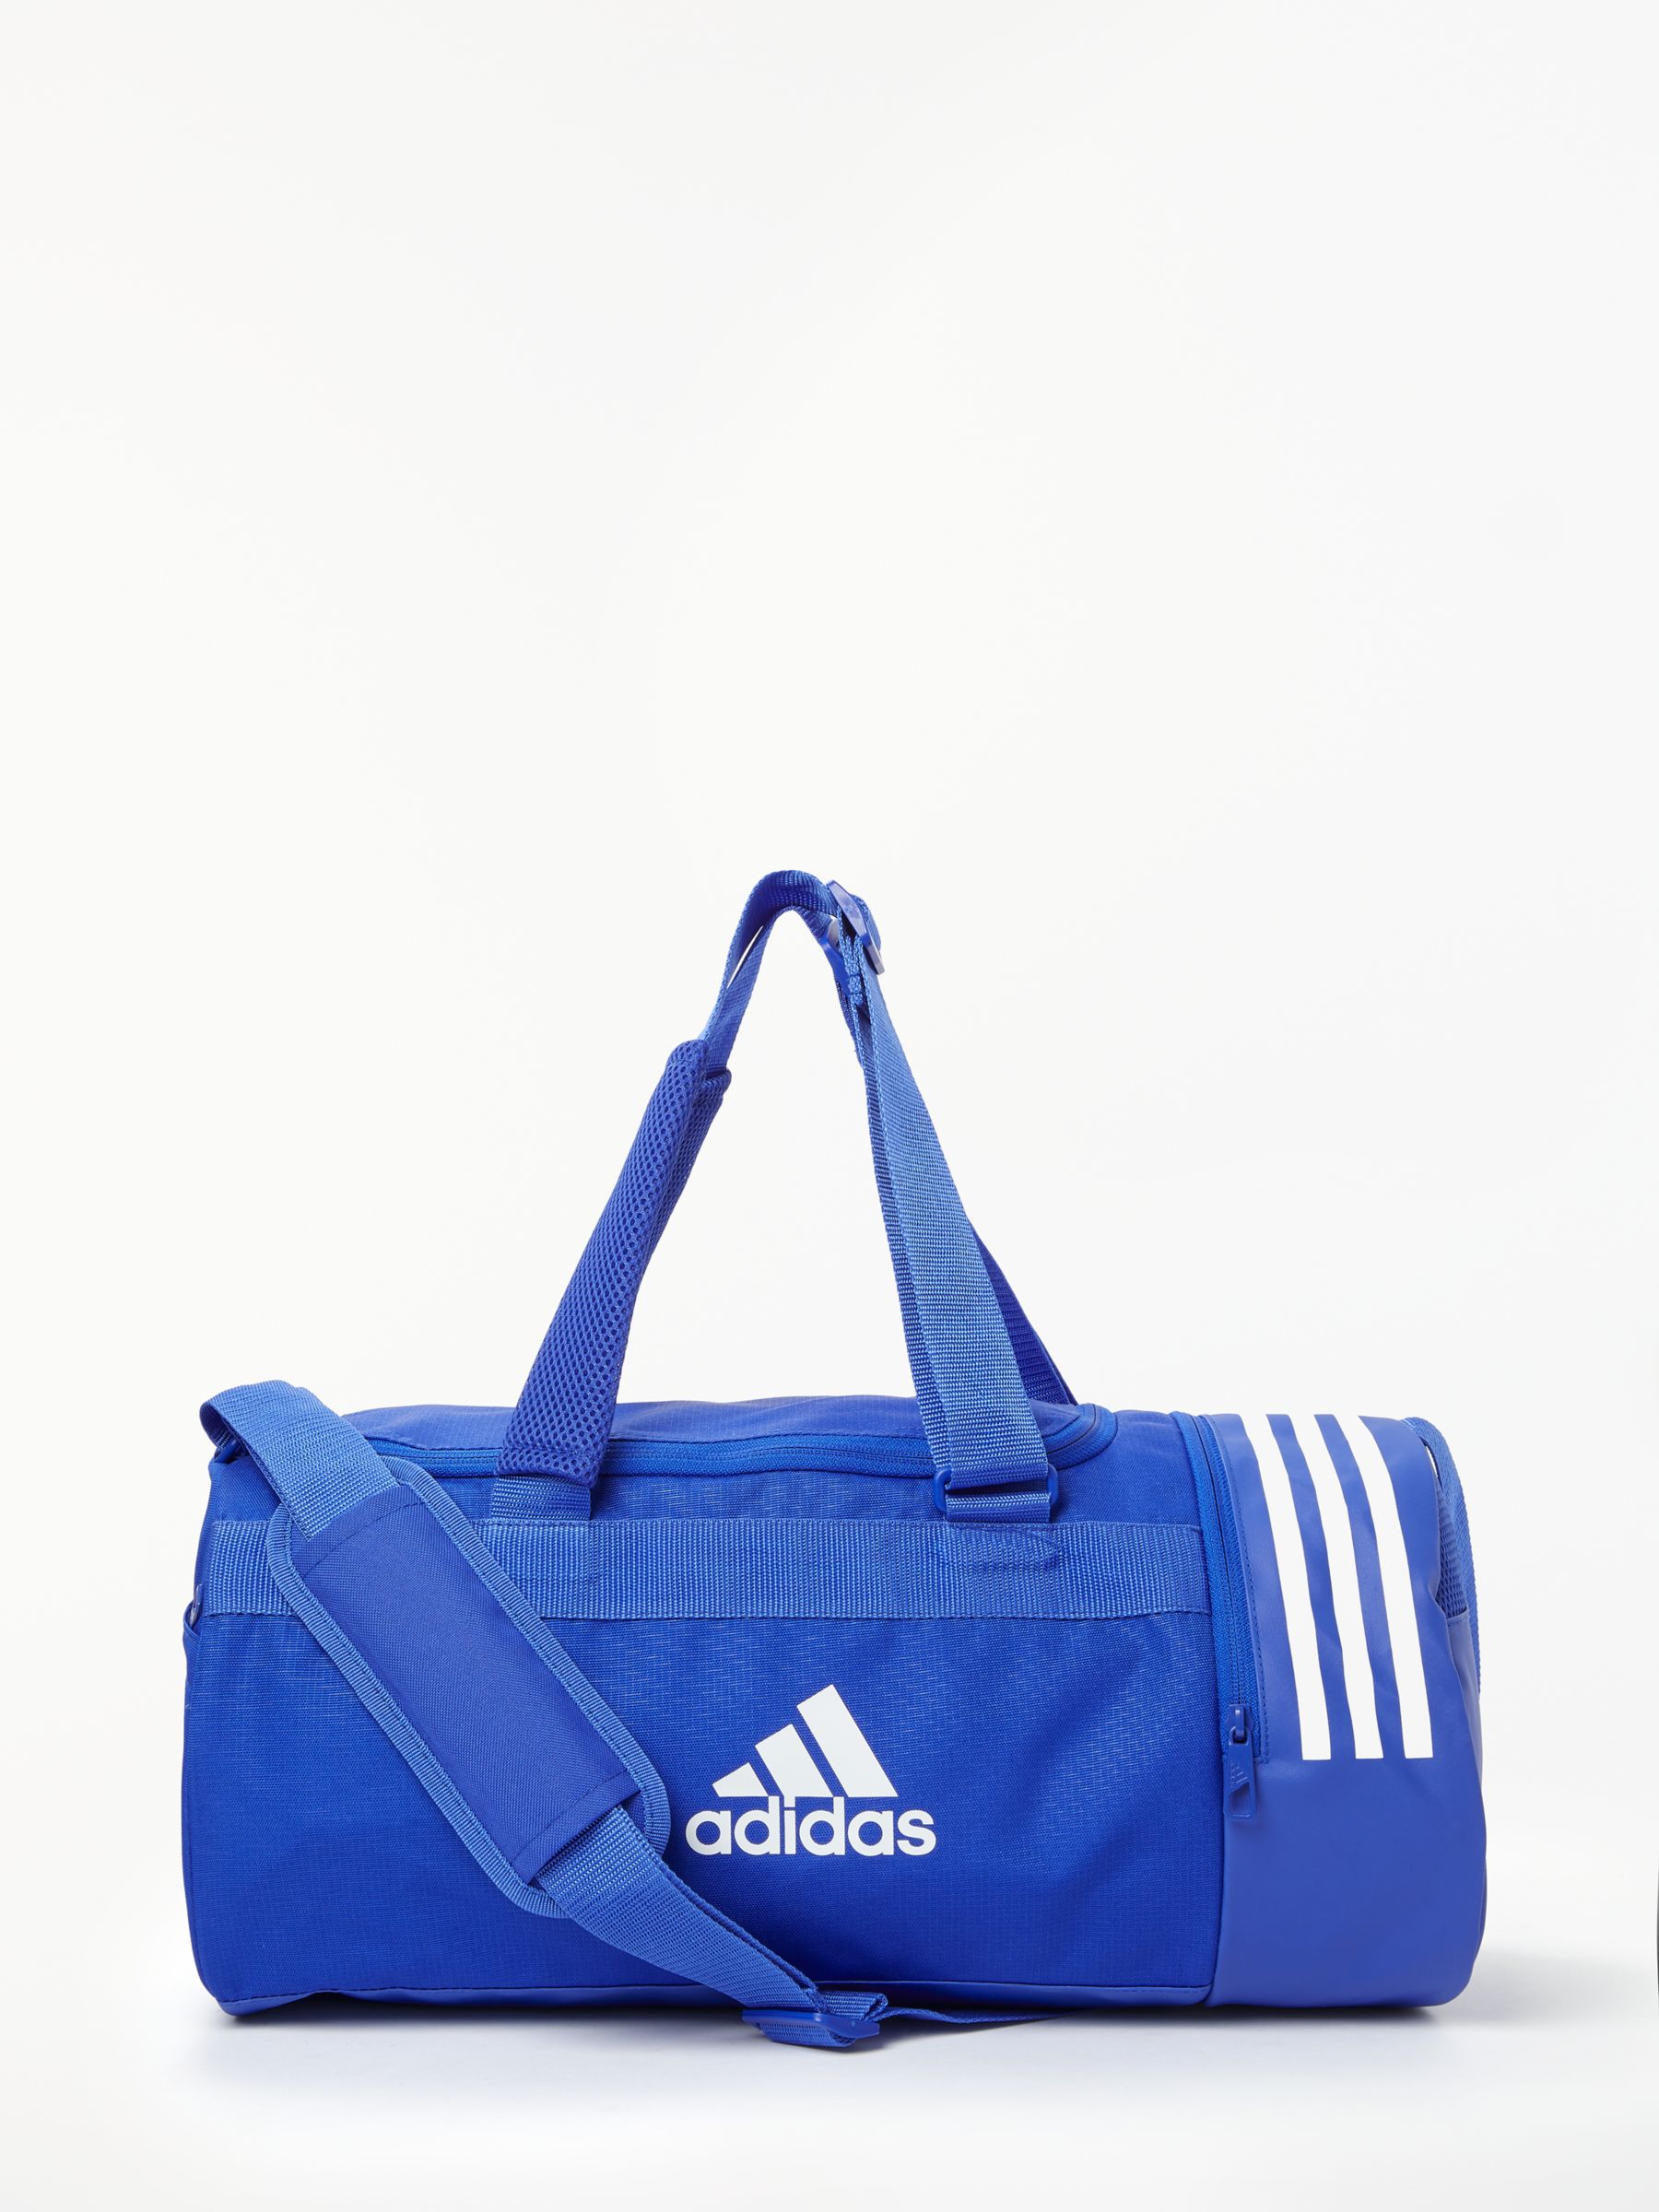 galón giro incidente Adidas Training Core Bag, Small, Bold Blue